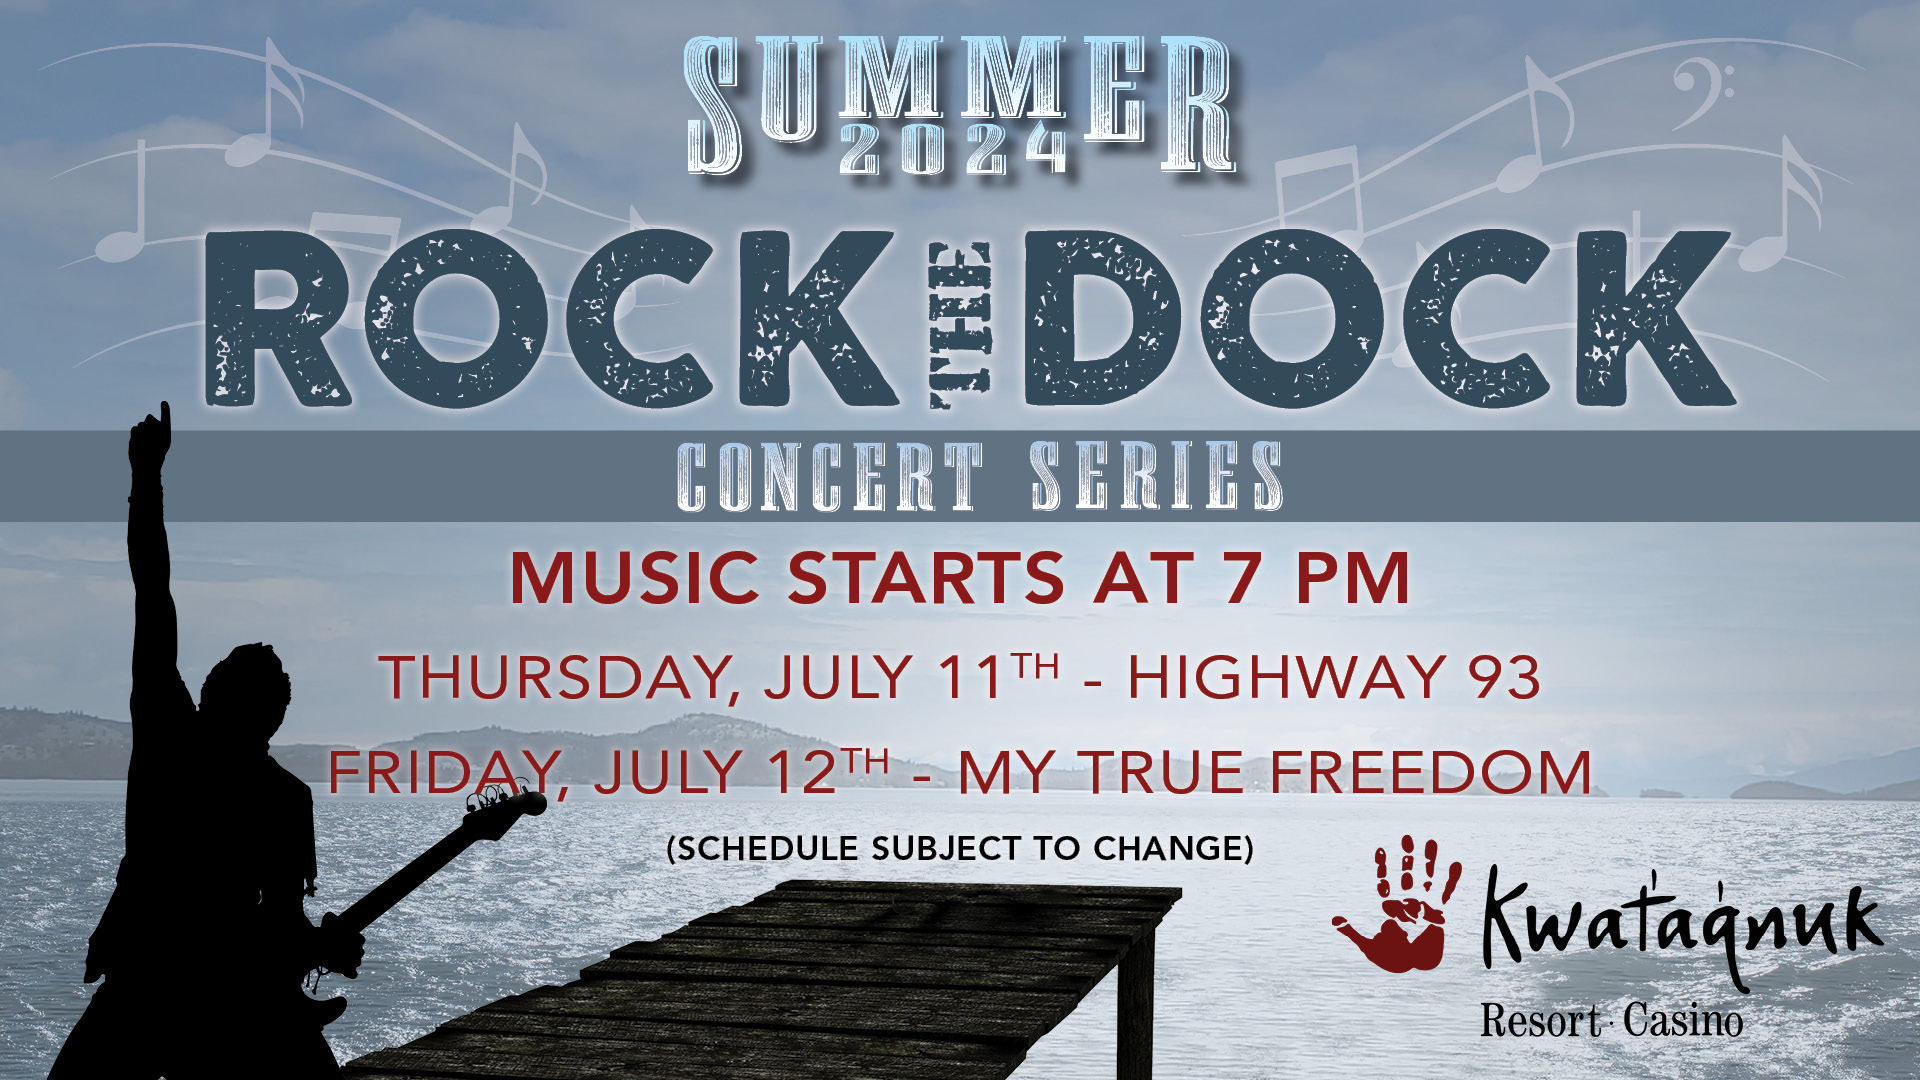 Rock the Dock, Summer Concert Series, my true freedom, highway 93, live music, rock the dock concert, outdoor concert, patio event